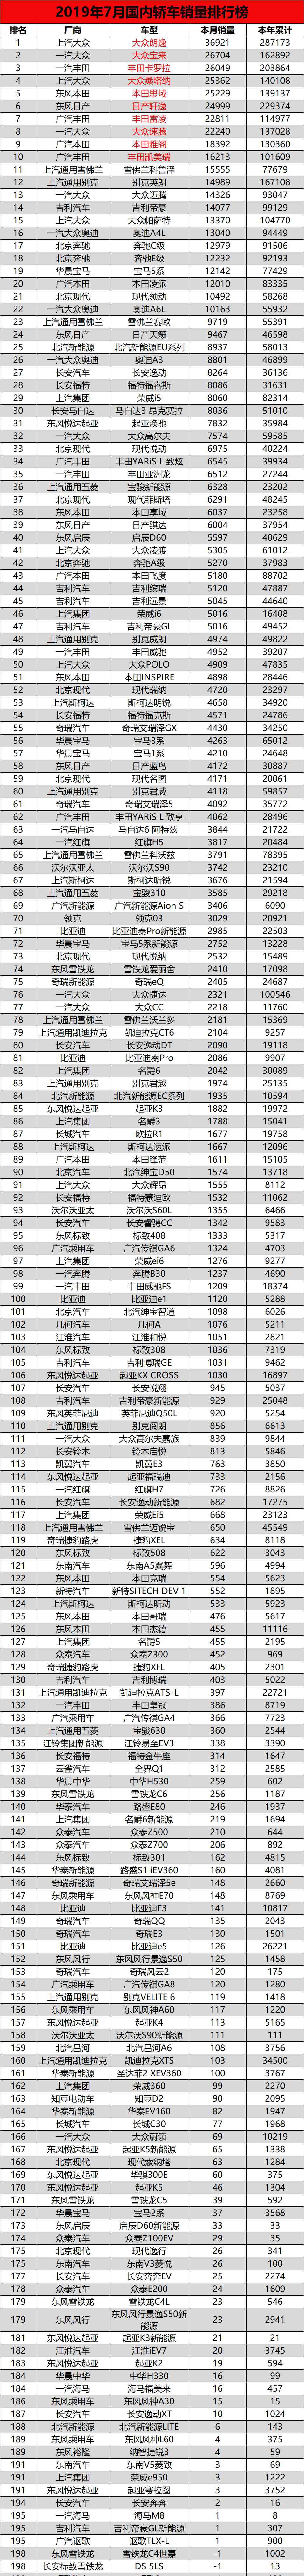 2019中国汽车销量排行榜 7月汽车销量完整版榜单 7月国内轿车销量排行榜前十